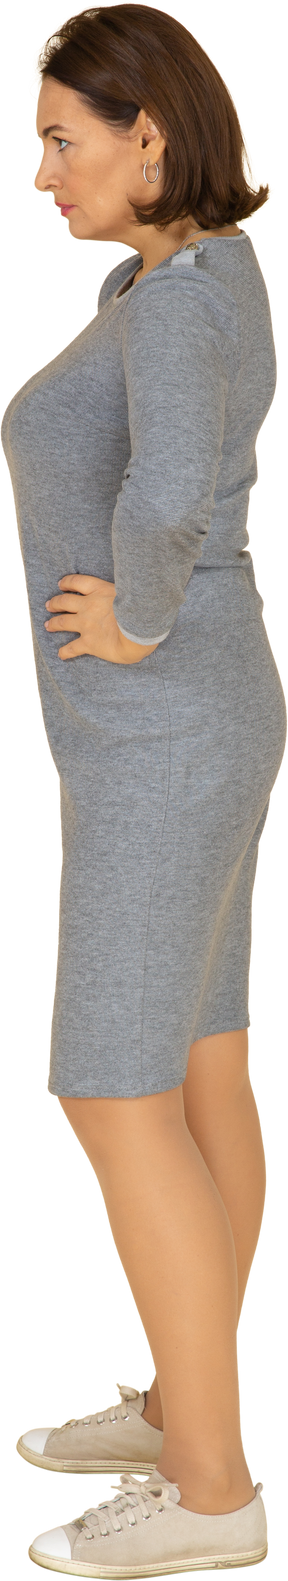 一个身着灰色连衣裙的女人双手叉腰站立的侧视图